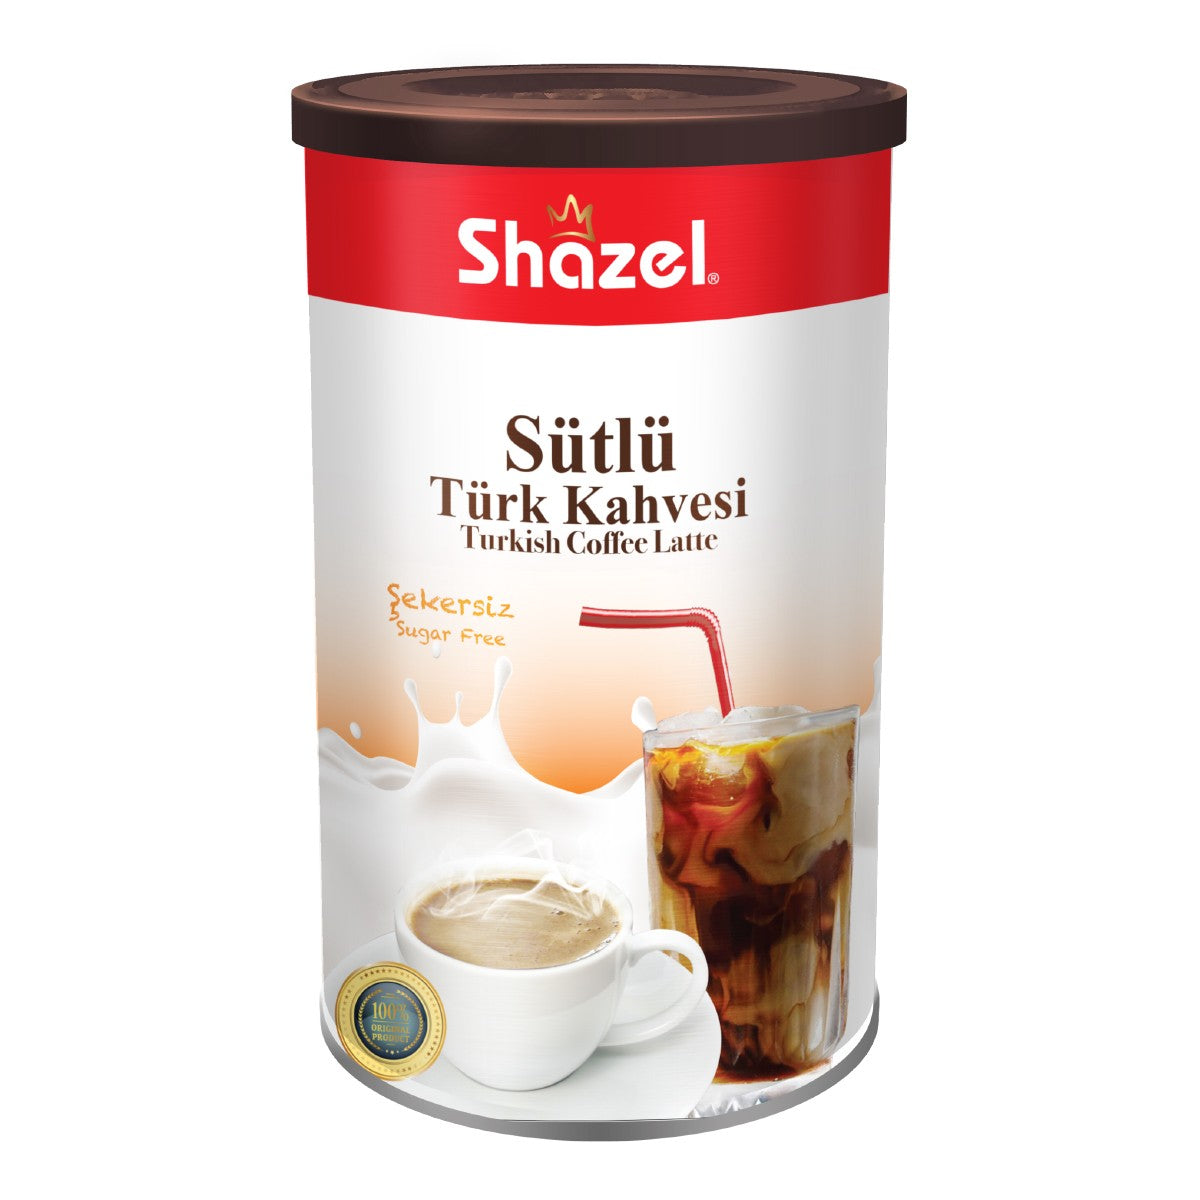 Shazel Sütlü Sade Hazır Türk Kahvesi 500 Gr